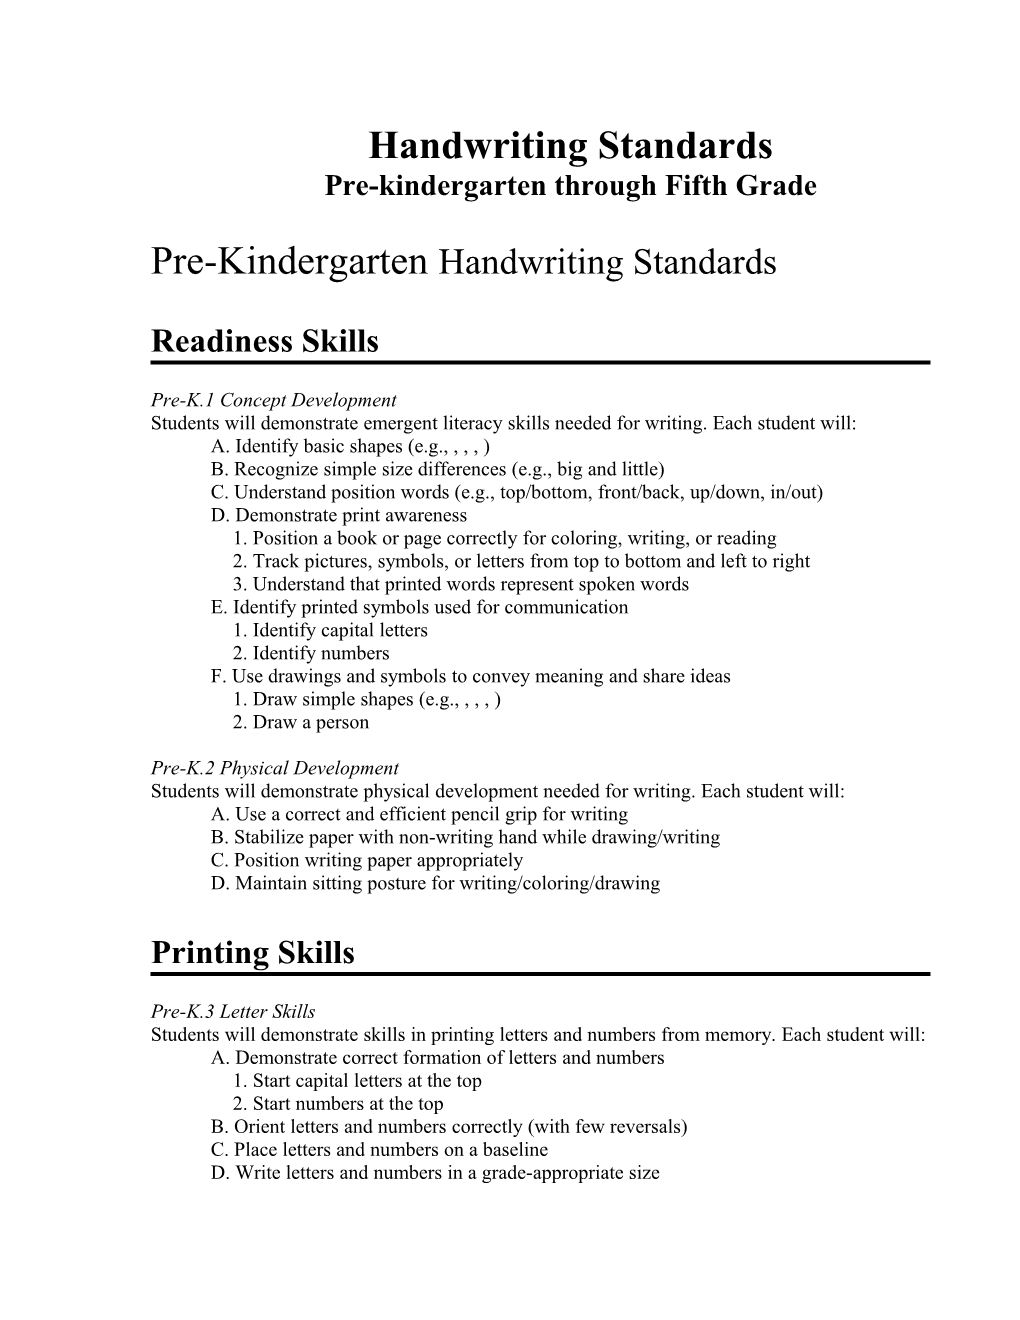 Pre-Kindergarten Through Fifth Grade